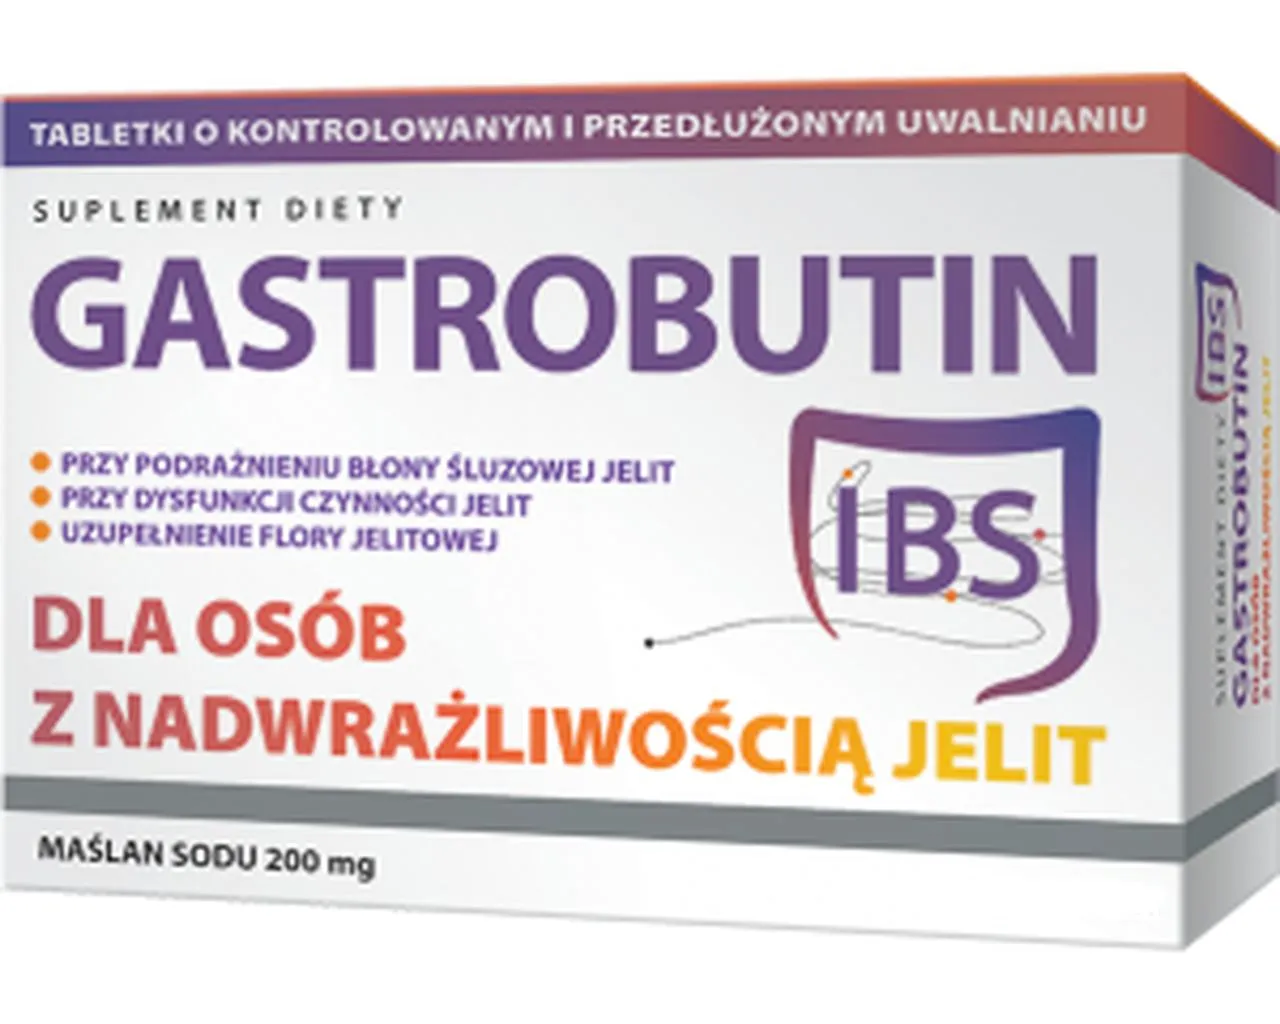 Gastrobutin IBS, suplement diety, 60 tabletek o zmodyfikowanym uwalnianiu